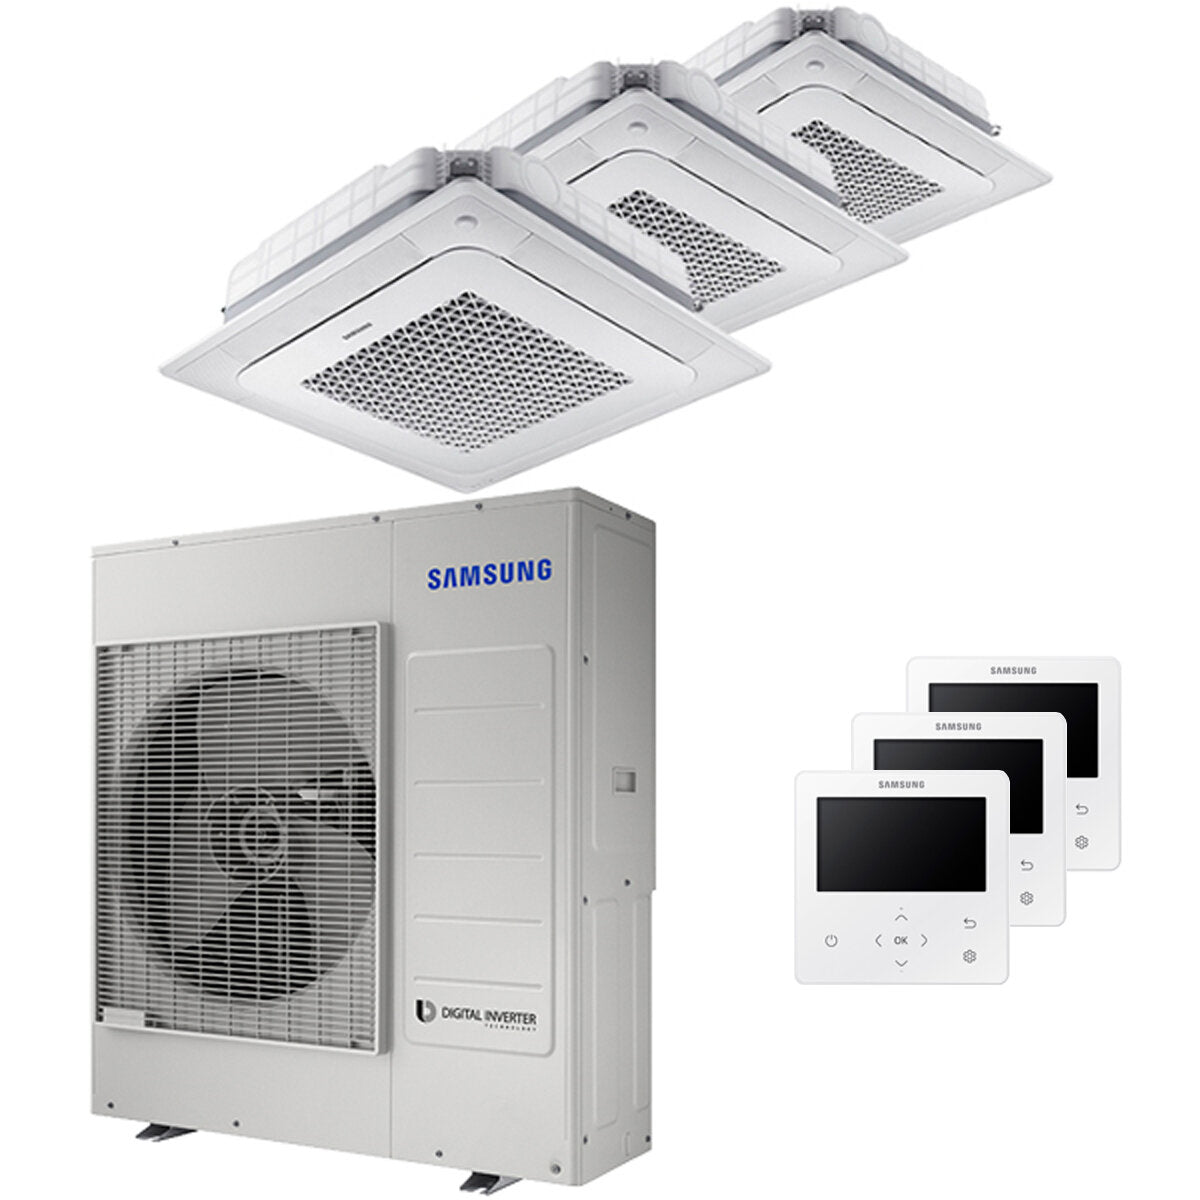 Samsung Climatiseur Windfree Essai 4 voies split 18000 + 18000 + 18000 BTU Inverter A++ Unité extérieure 10,0 kW